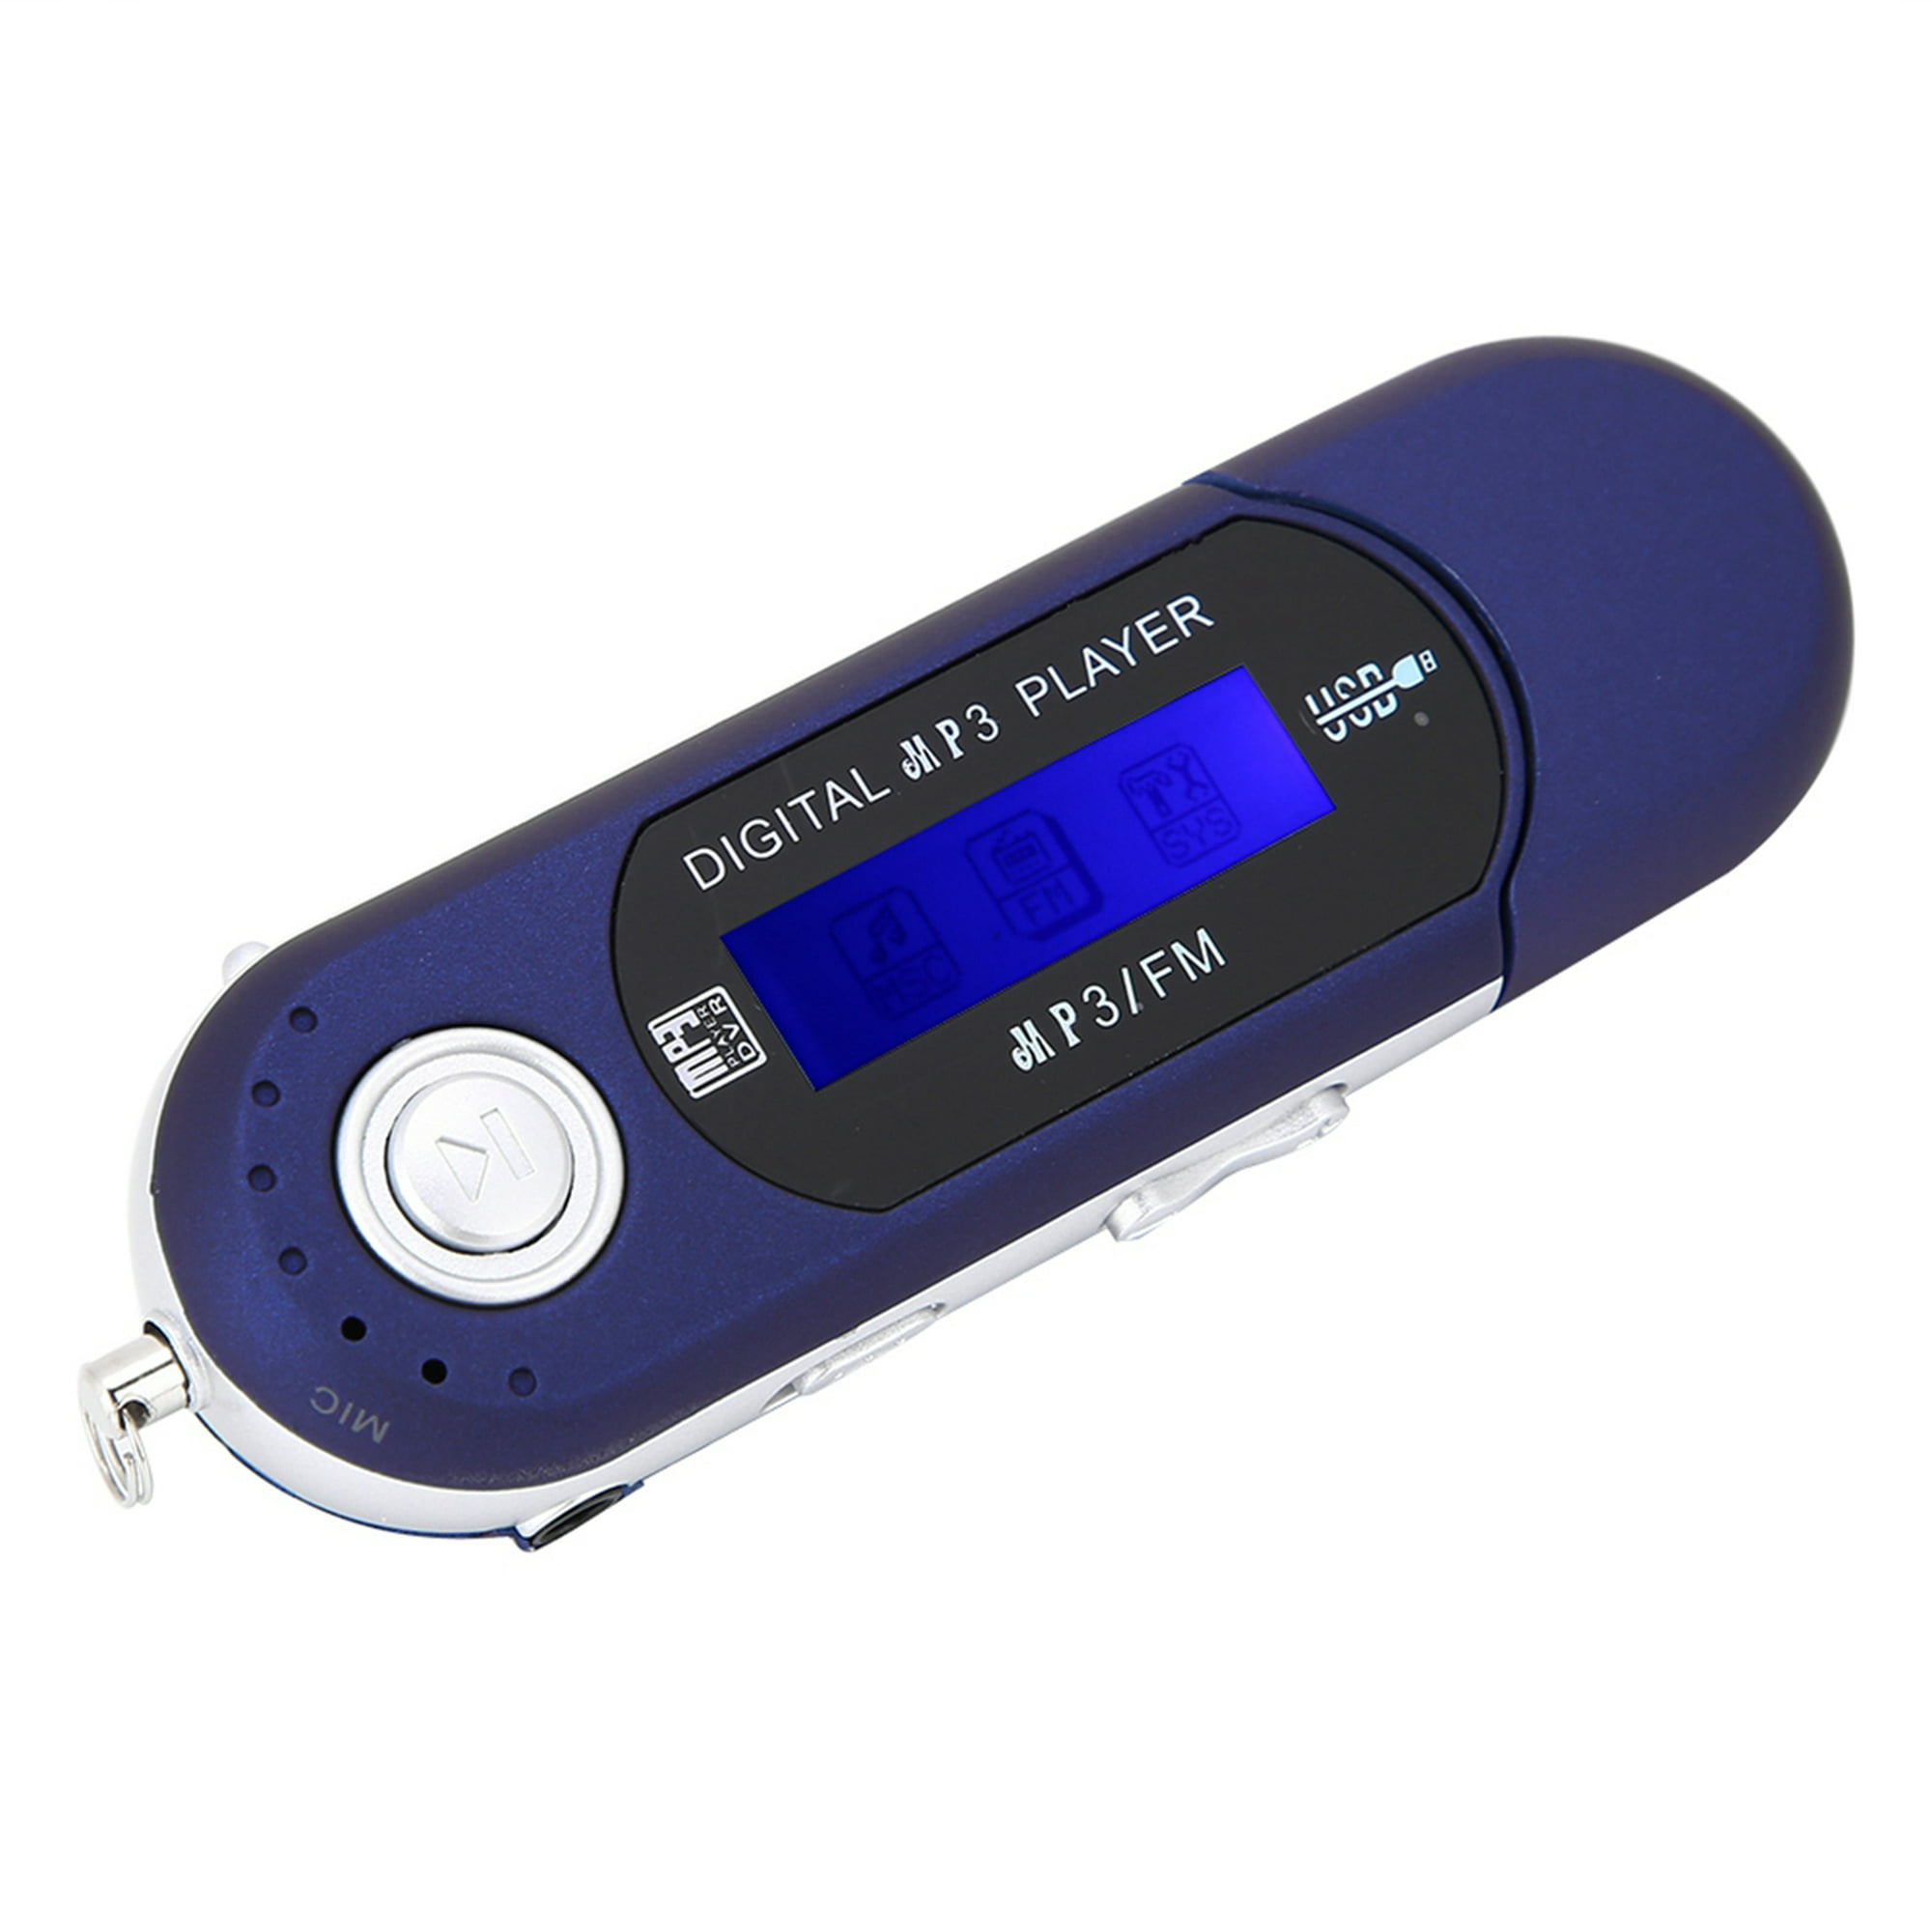 Reproductor MP3 Bluetooth con tarjeta TF de 32 GB, reproductor de música  portátil con altavoz HD integrado, función de video, radio FM, grabadora de